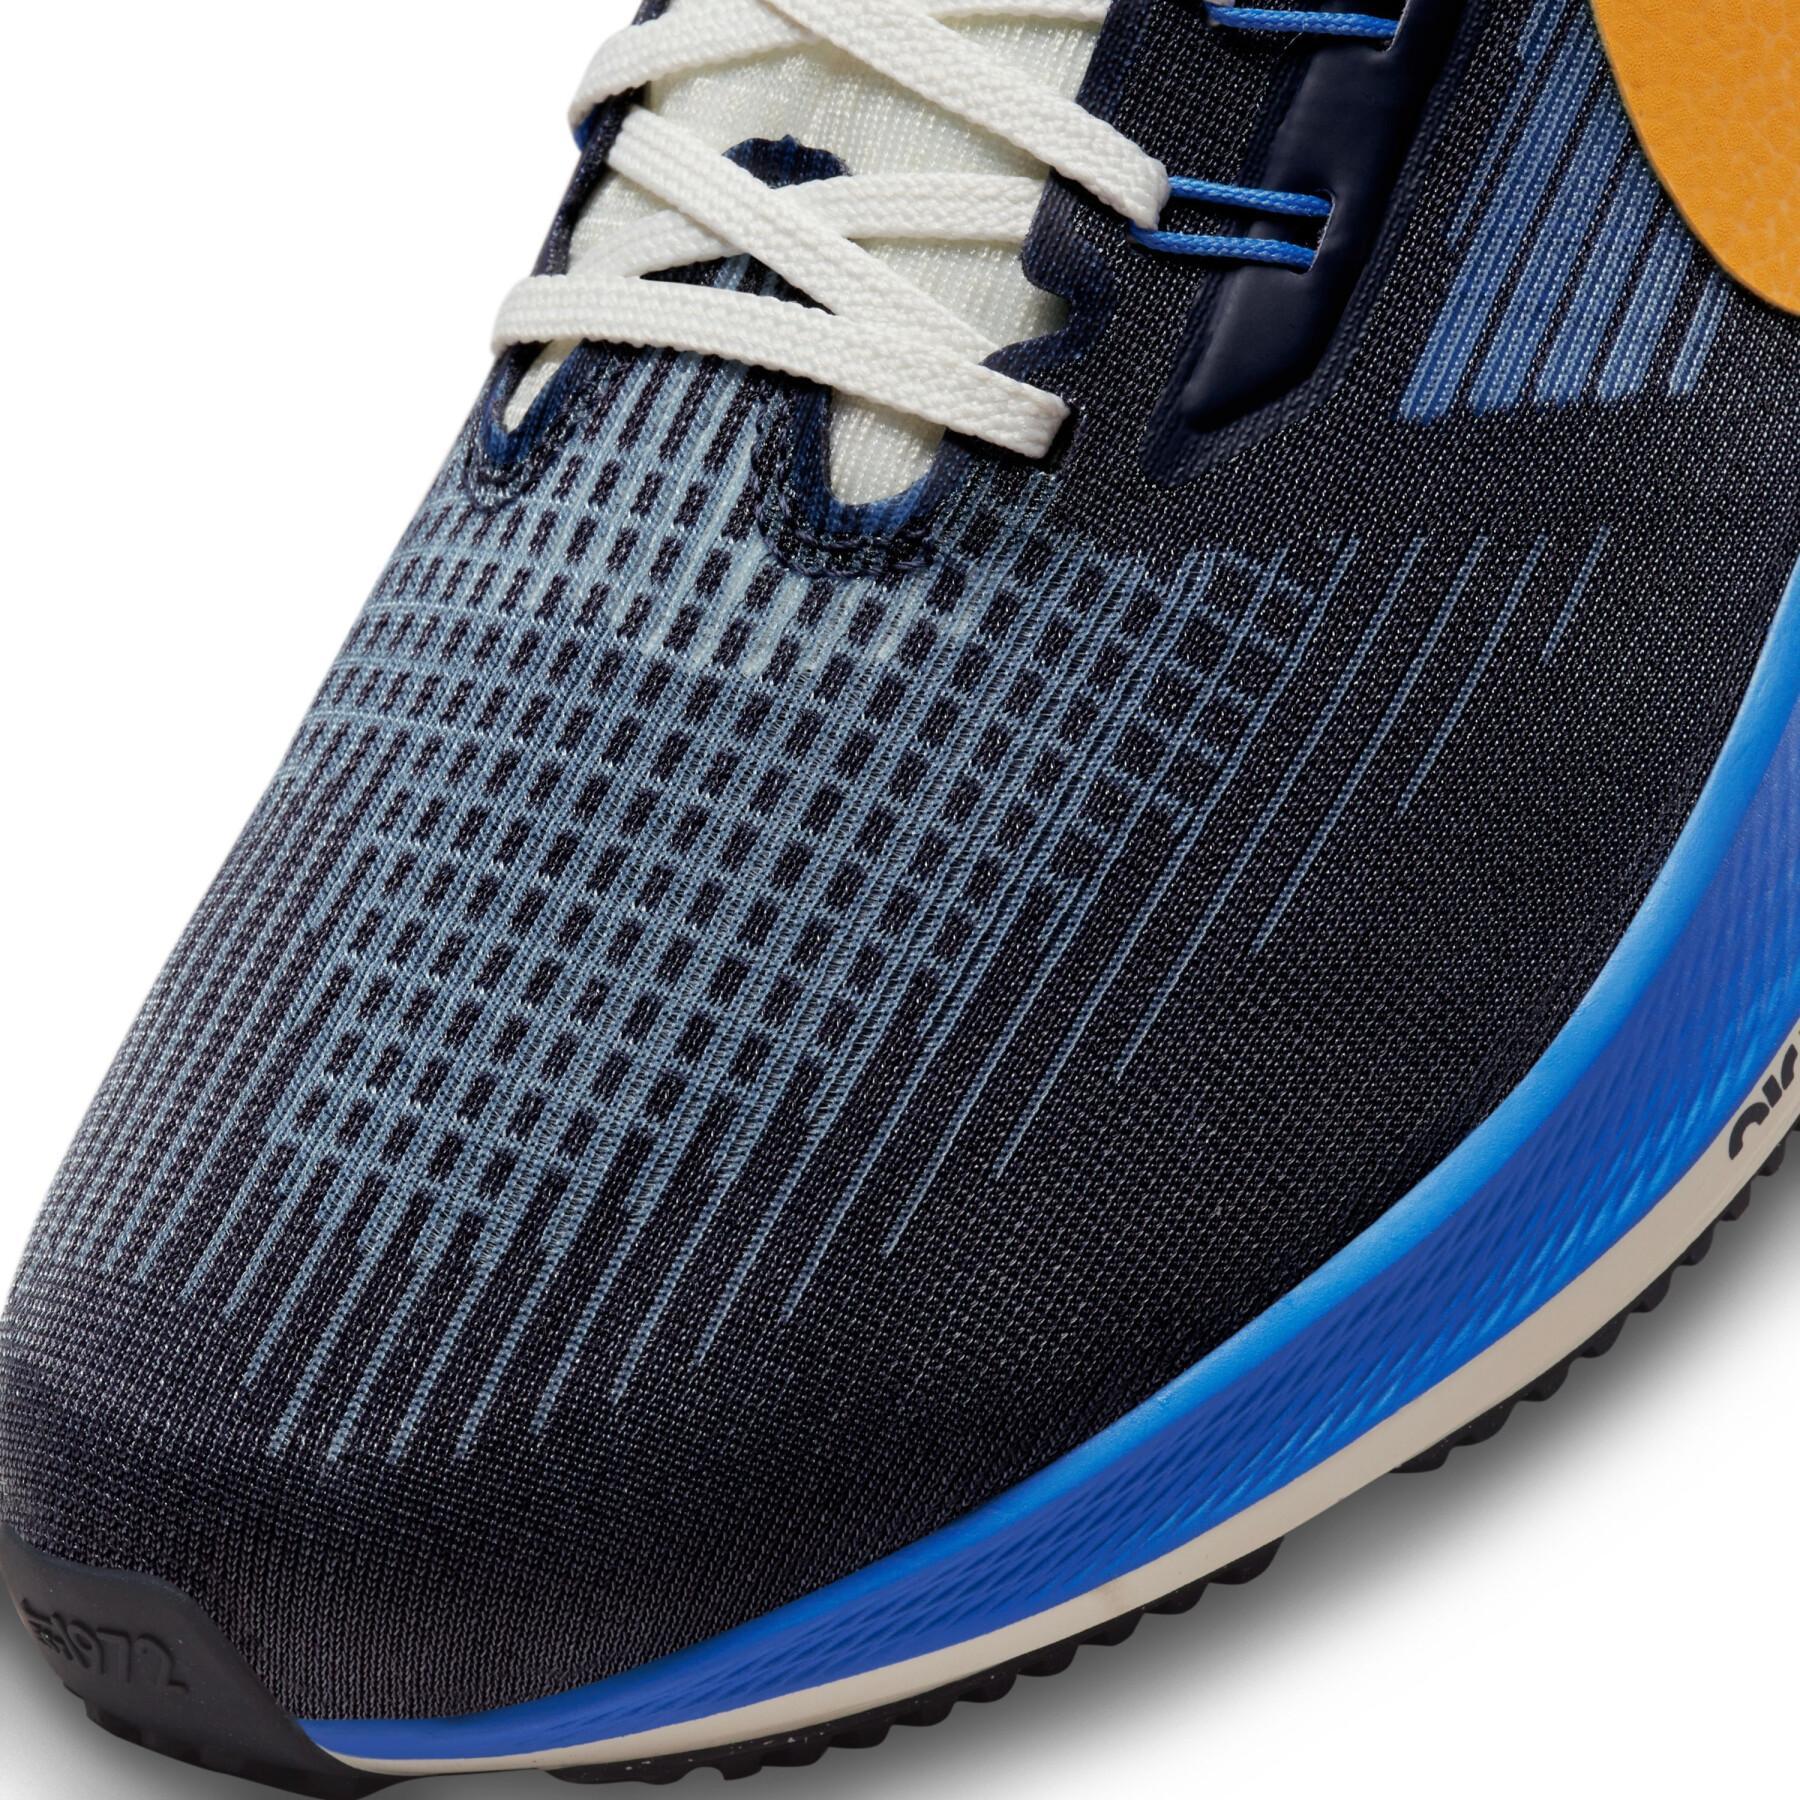 Running shoes Nike Air Zoom Pegasus 39 Premium